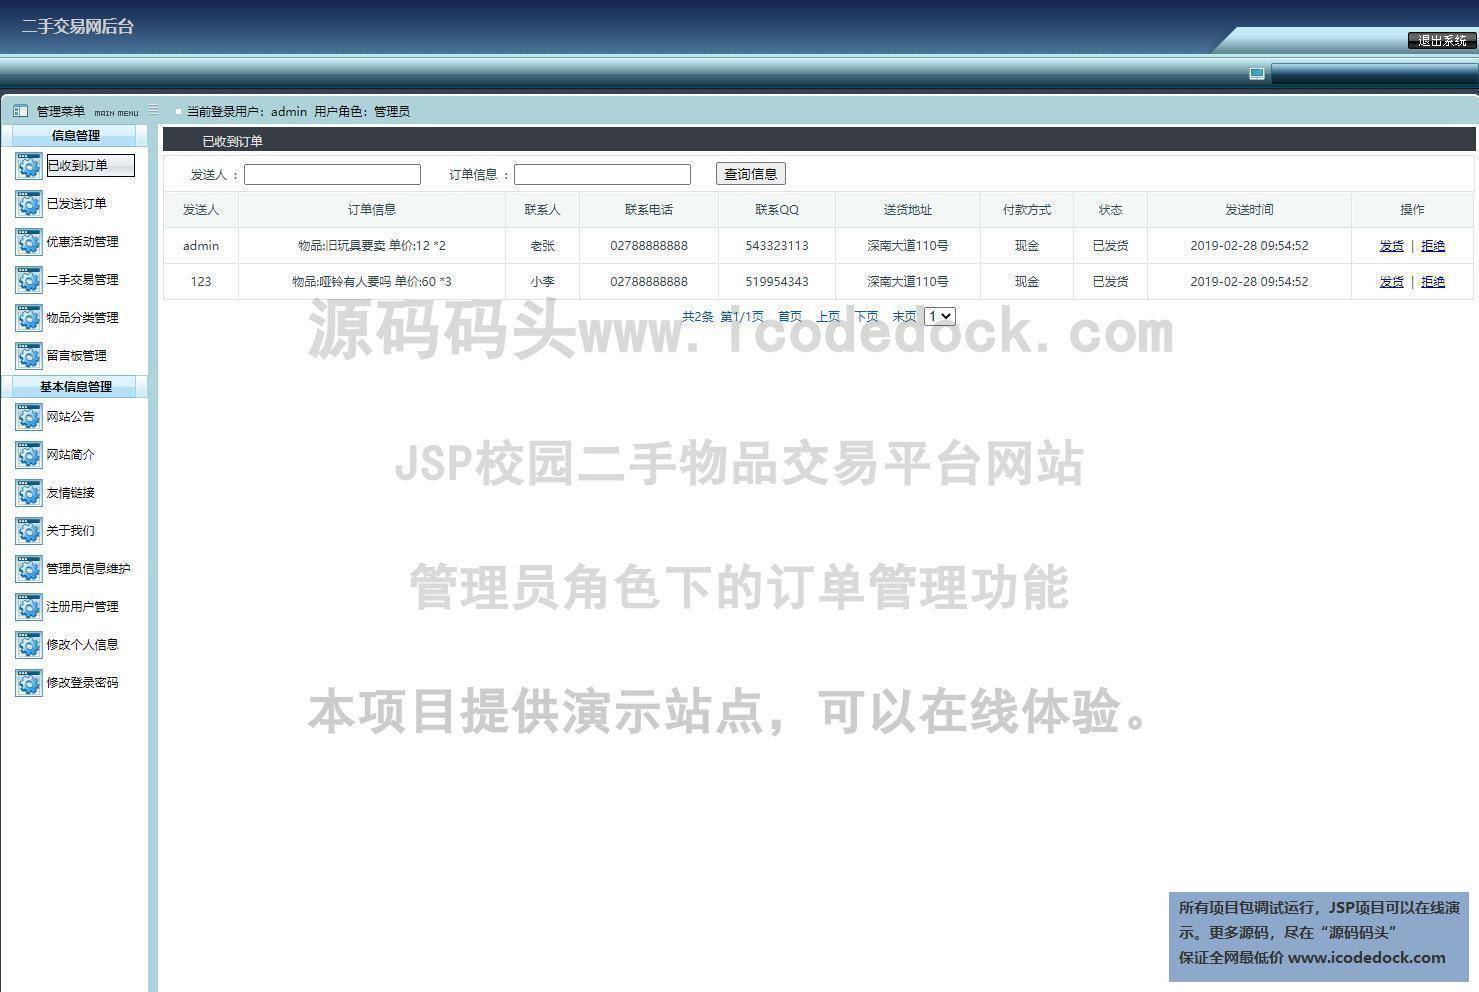 源码码头-JSP校园二手物品交易平台网站-管理员角色-订单管理